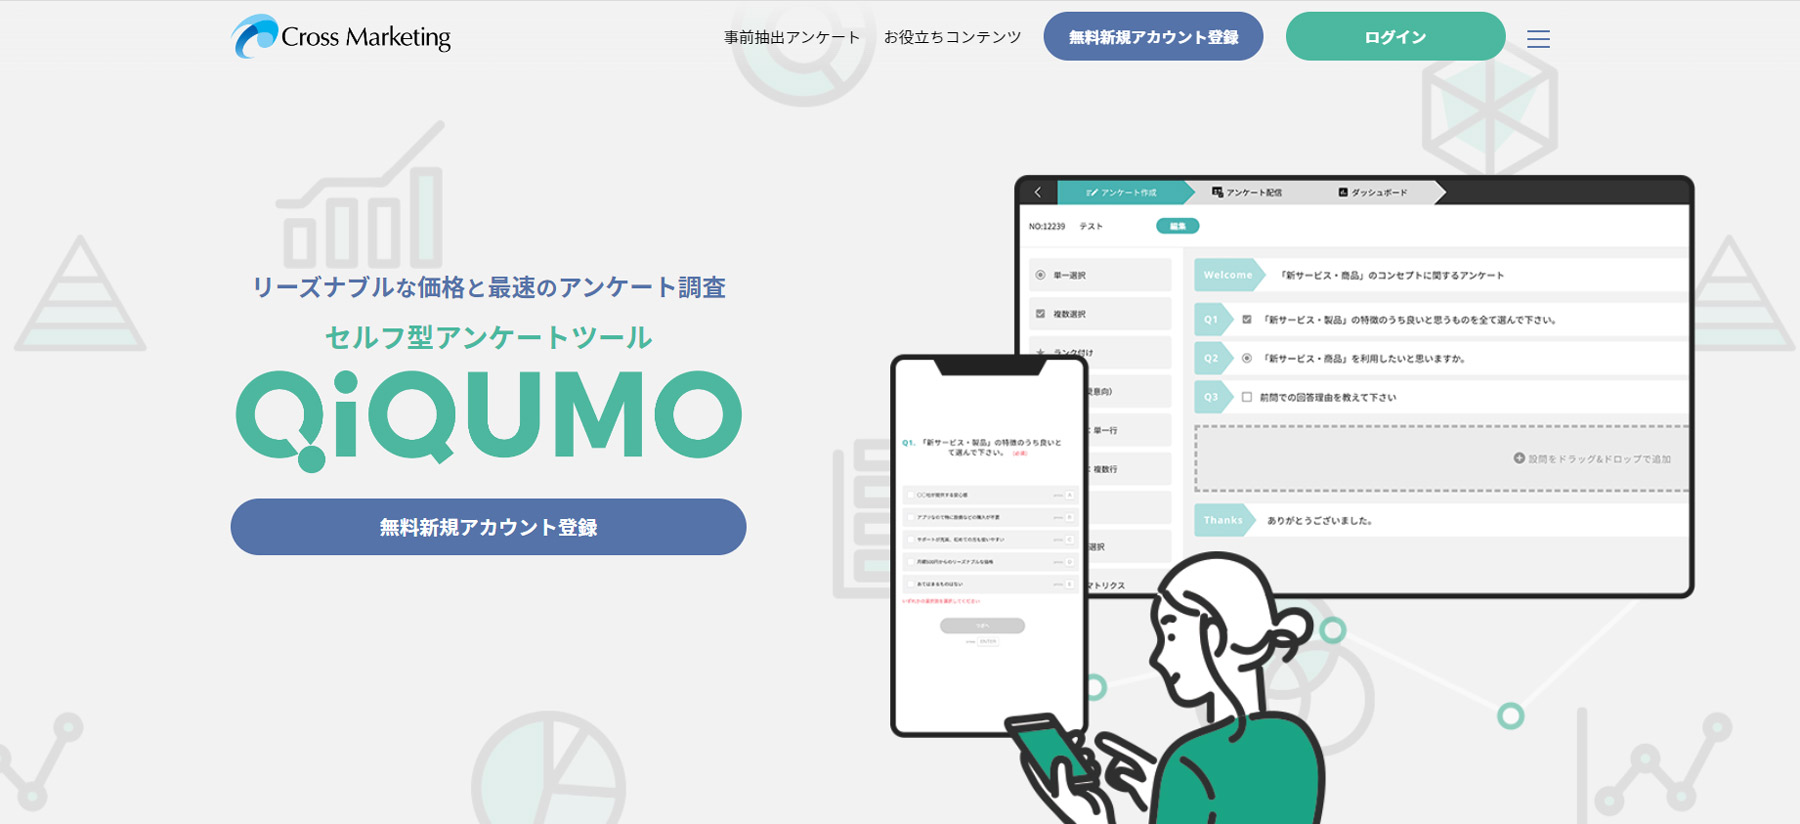 QIQUMO公式Webサイト